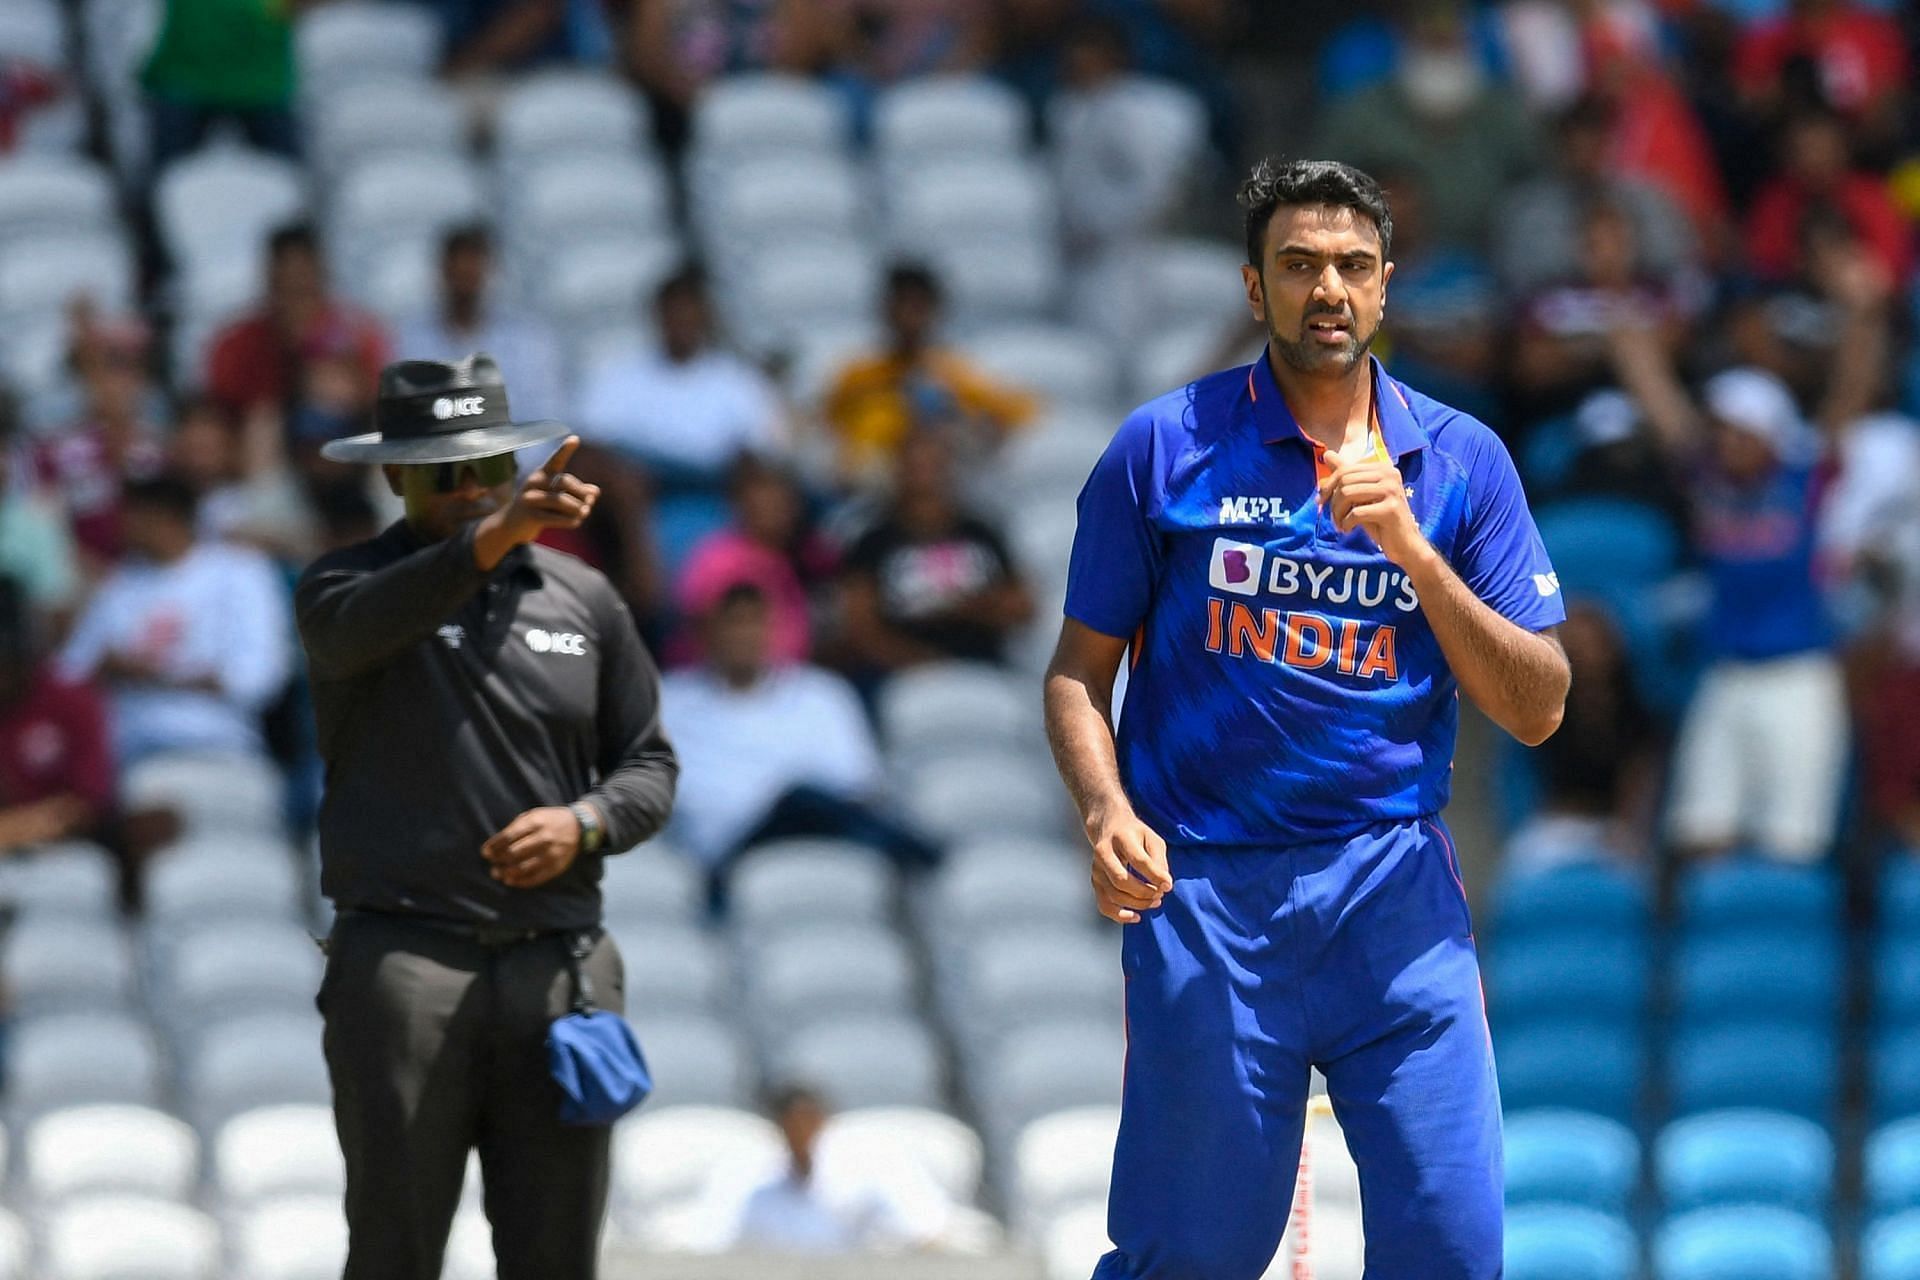 रविचंद्रन अश्विन ने वेस्&zwj;टइंडीज के खिलाफ पहले टी20 इंटरनेशनल मैच में दो विकेट लिए